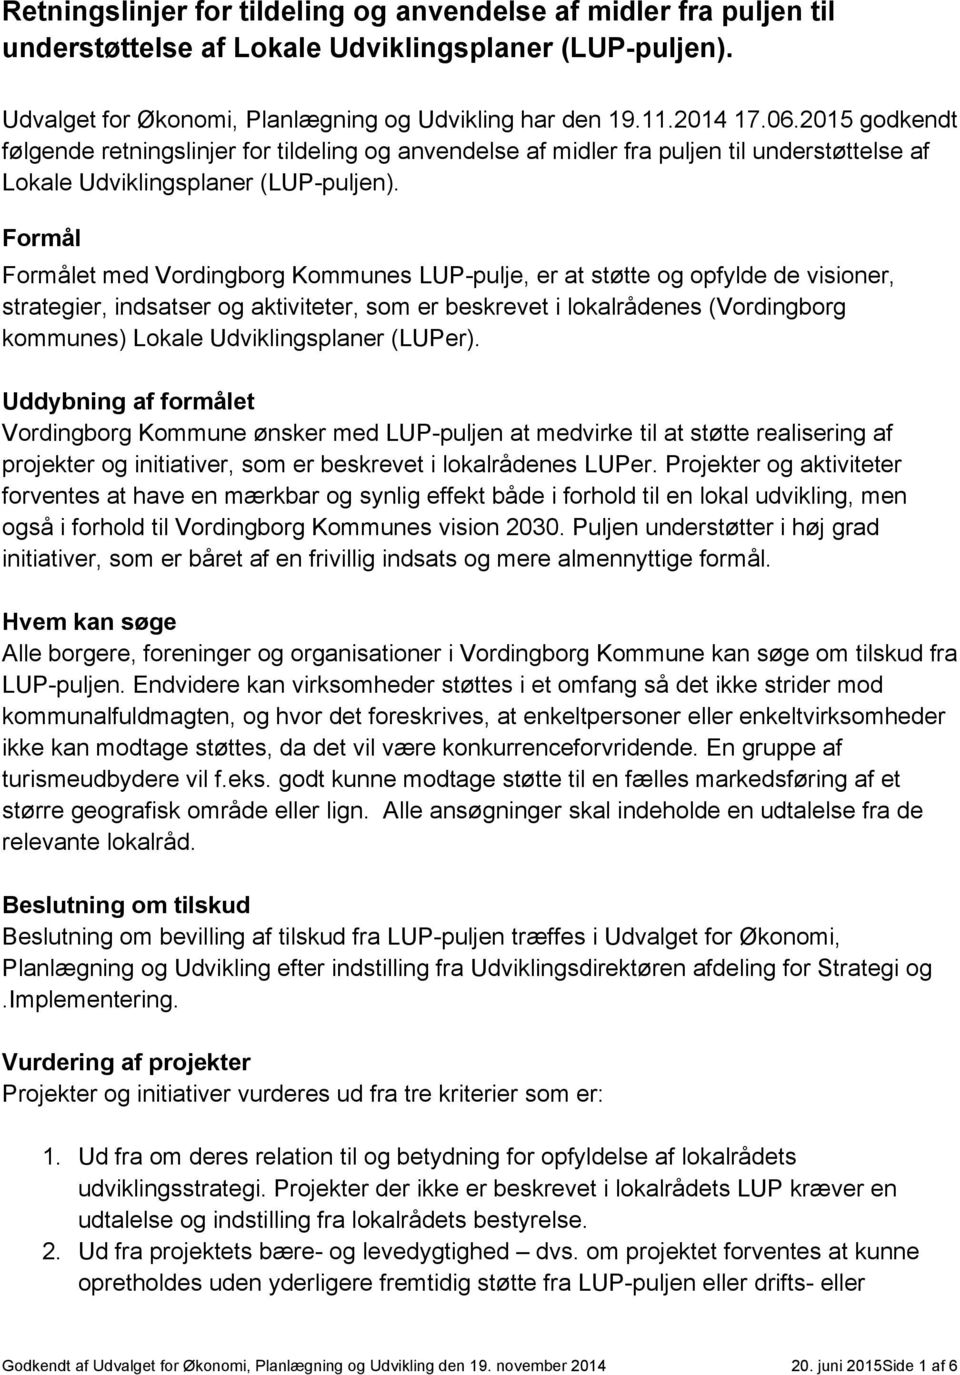 Formål Formålet med Vordingborg Kommunes LUP-pulje, er at støtte og opfylde de visioner, strategier, indsatser og aktiviteter, som er beskrevet i lokalrådenes (Vordingborg kommunes) Lokale